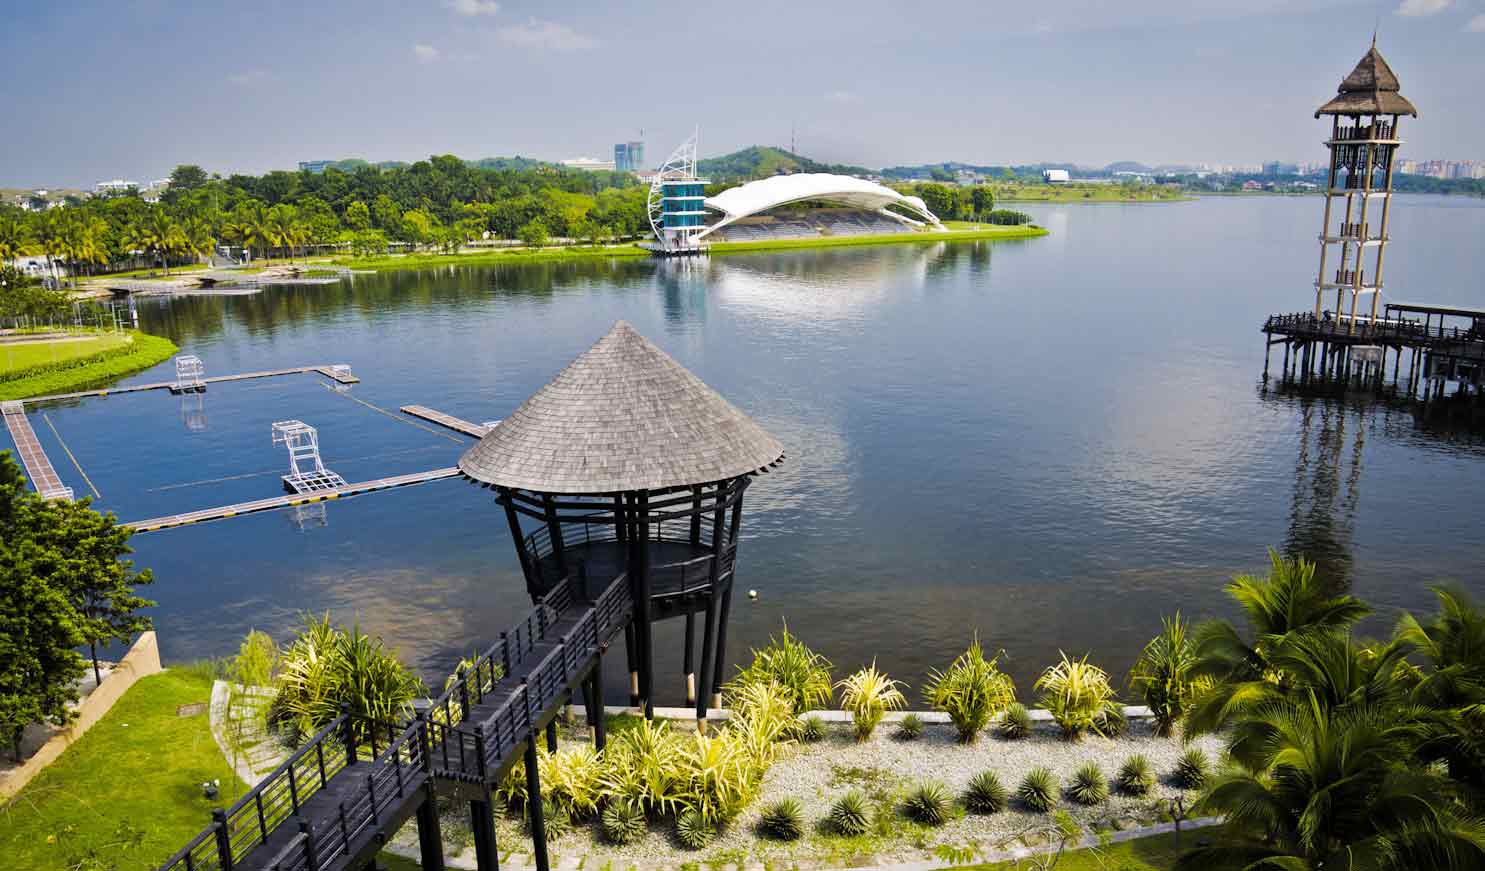 اهم الانشطة السياحية فى بحيرة بوتراجايا في سيلانجور فى ماليزيا الرائعه